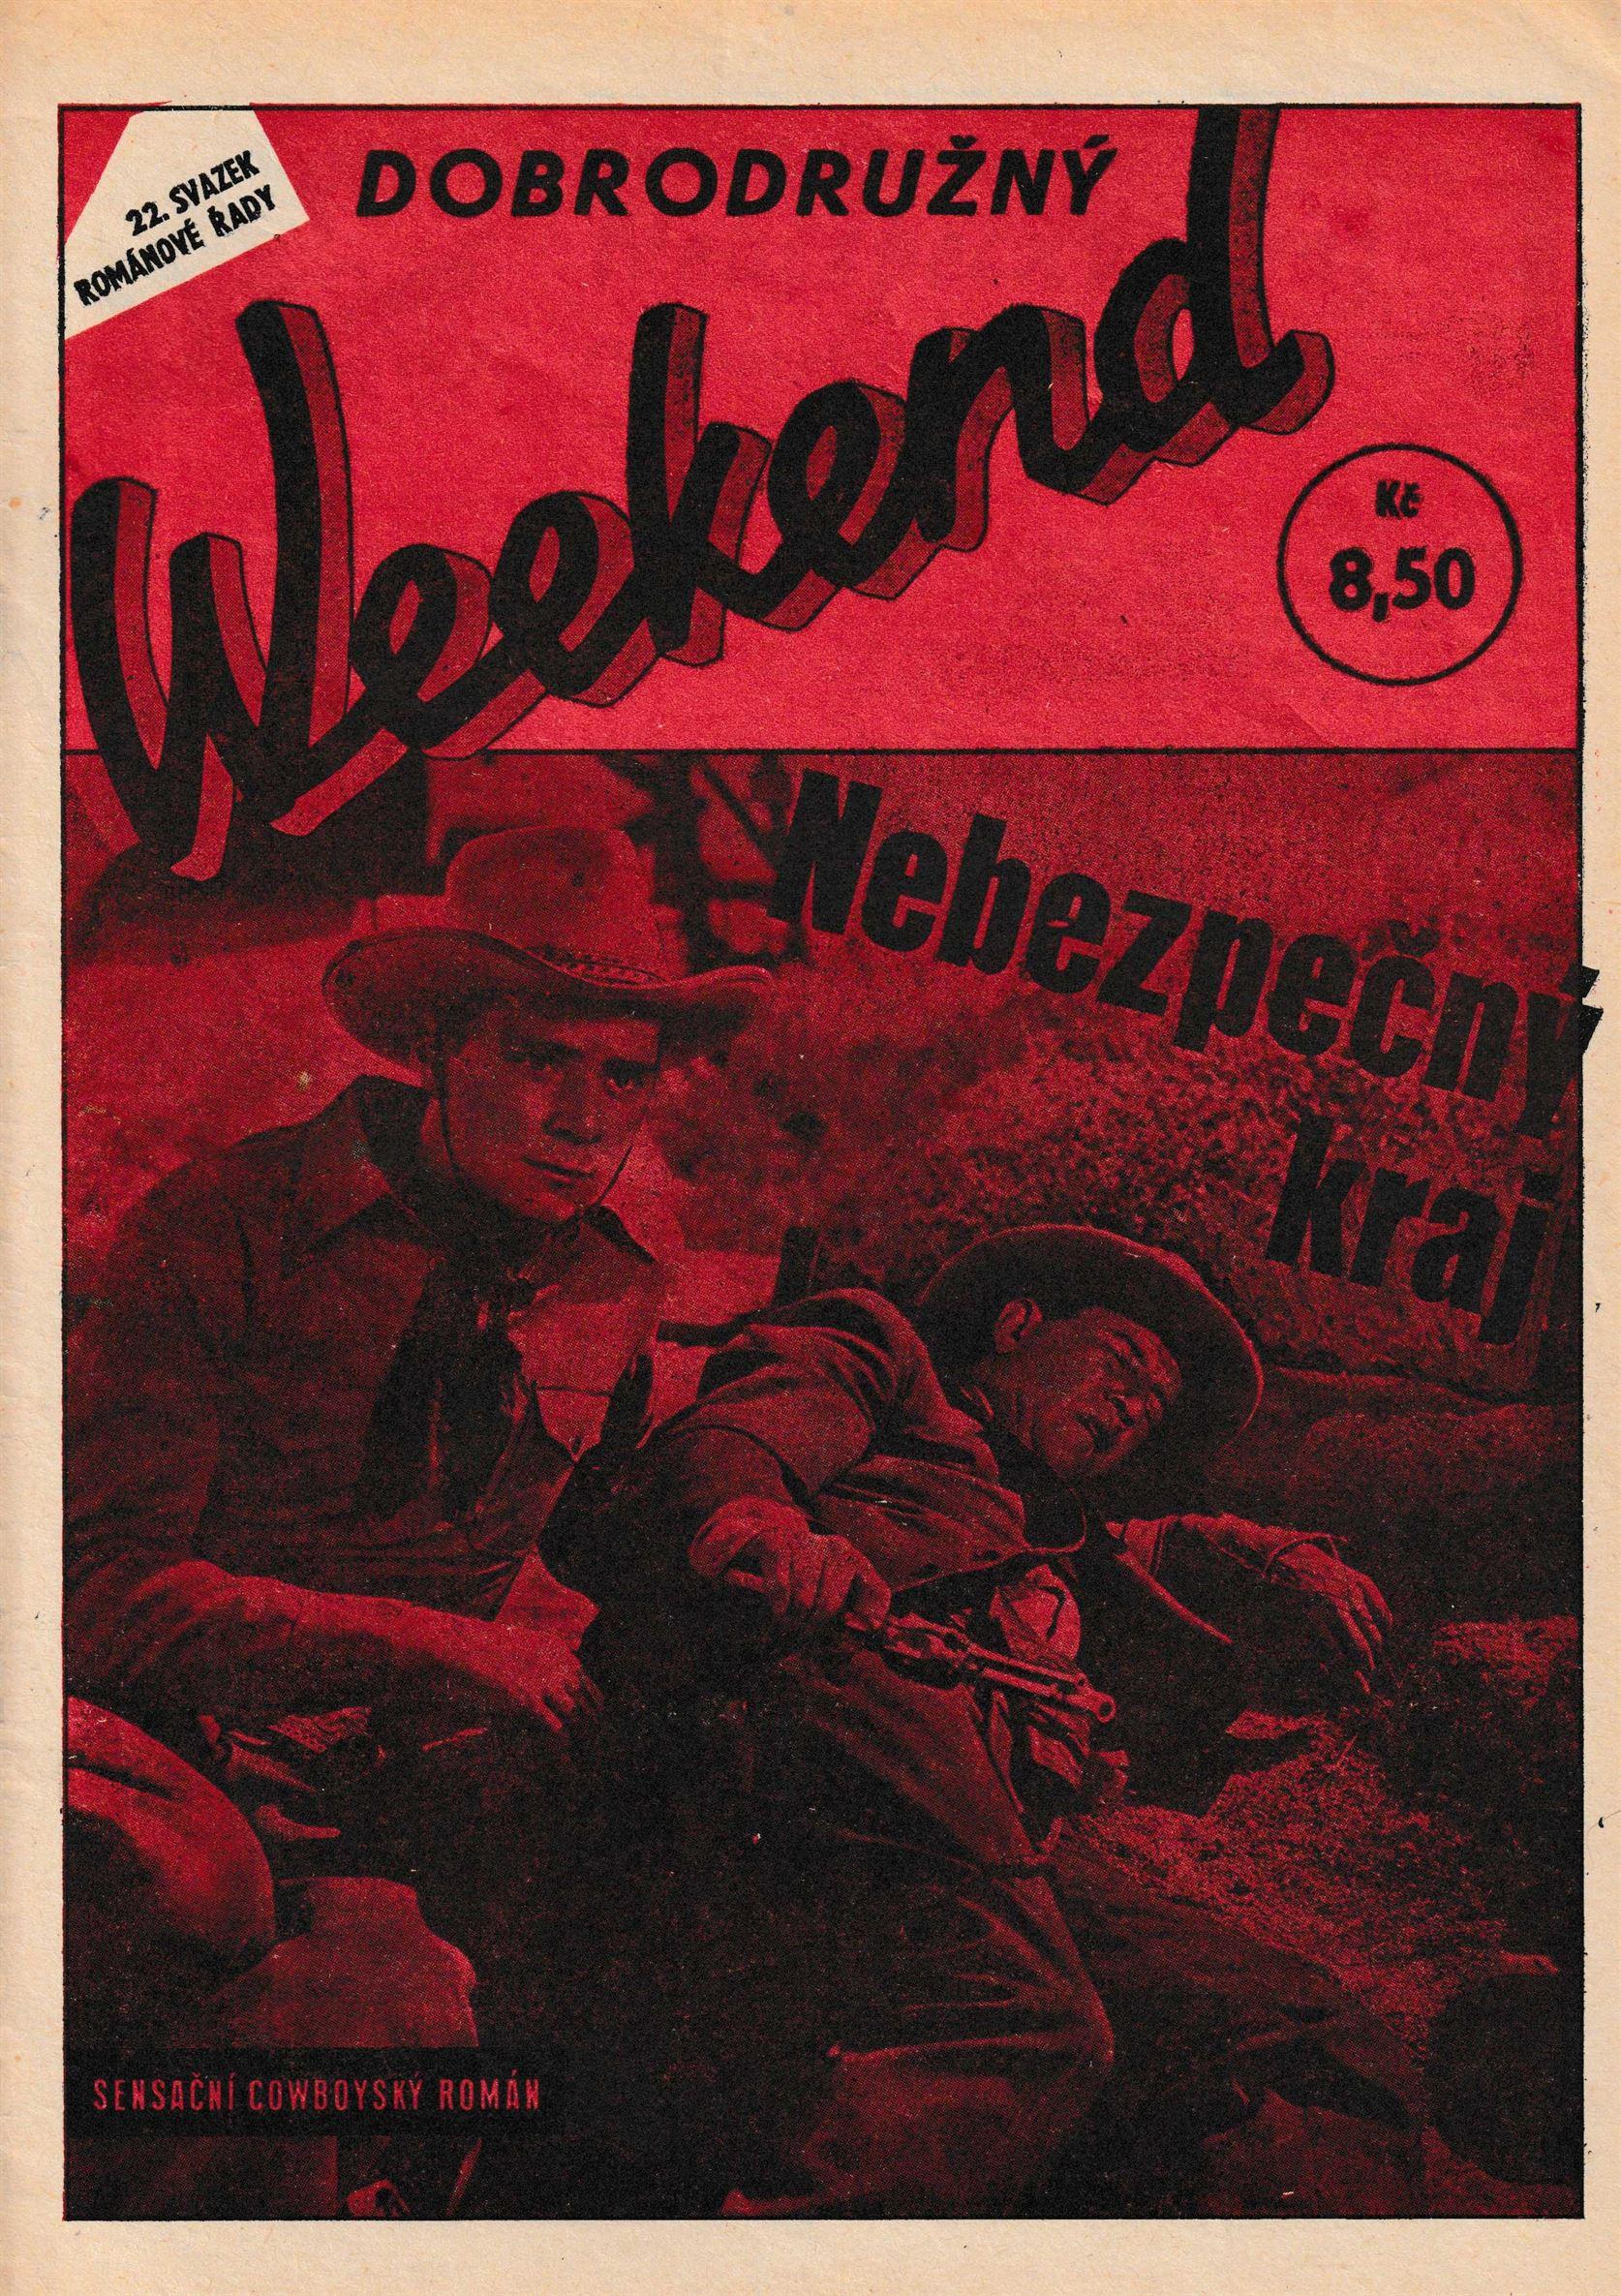 "Dobroduzny Weekend" číslo 22 - Cowboy román ve velmi dobrém stavu